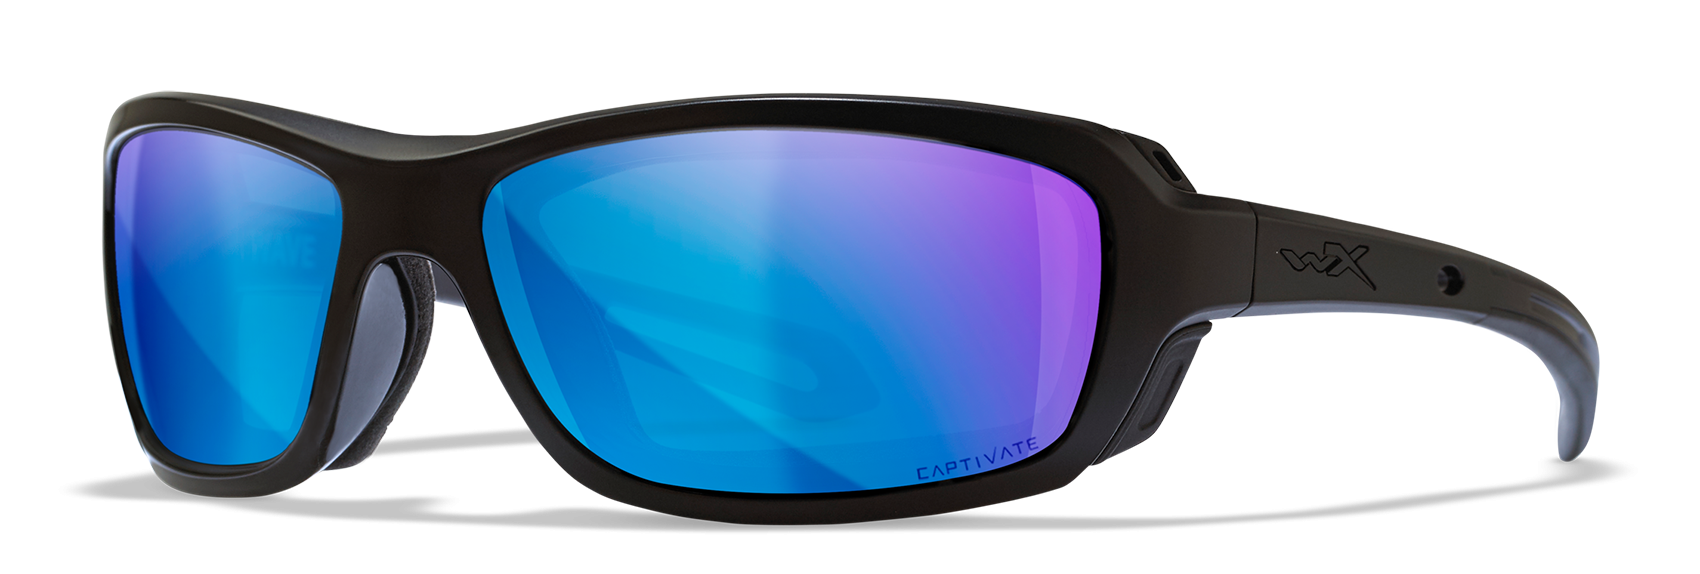 Wiley X WX Wave Matte Black Polycarbonate Sunglasses